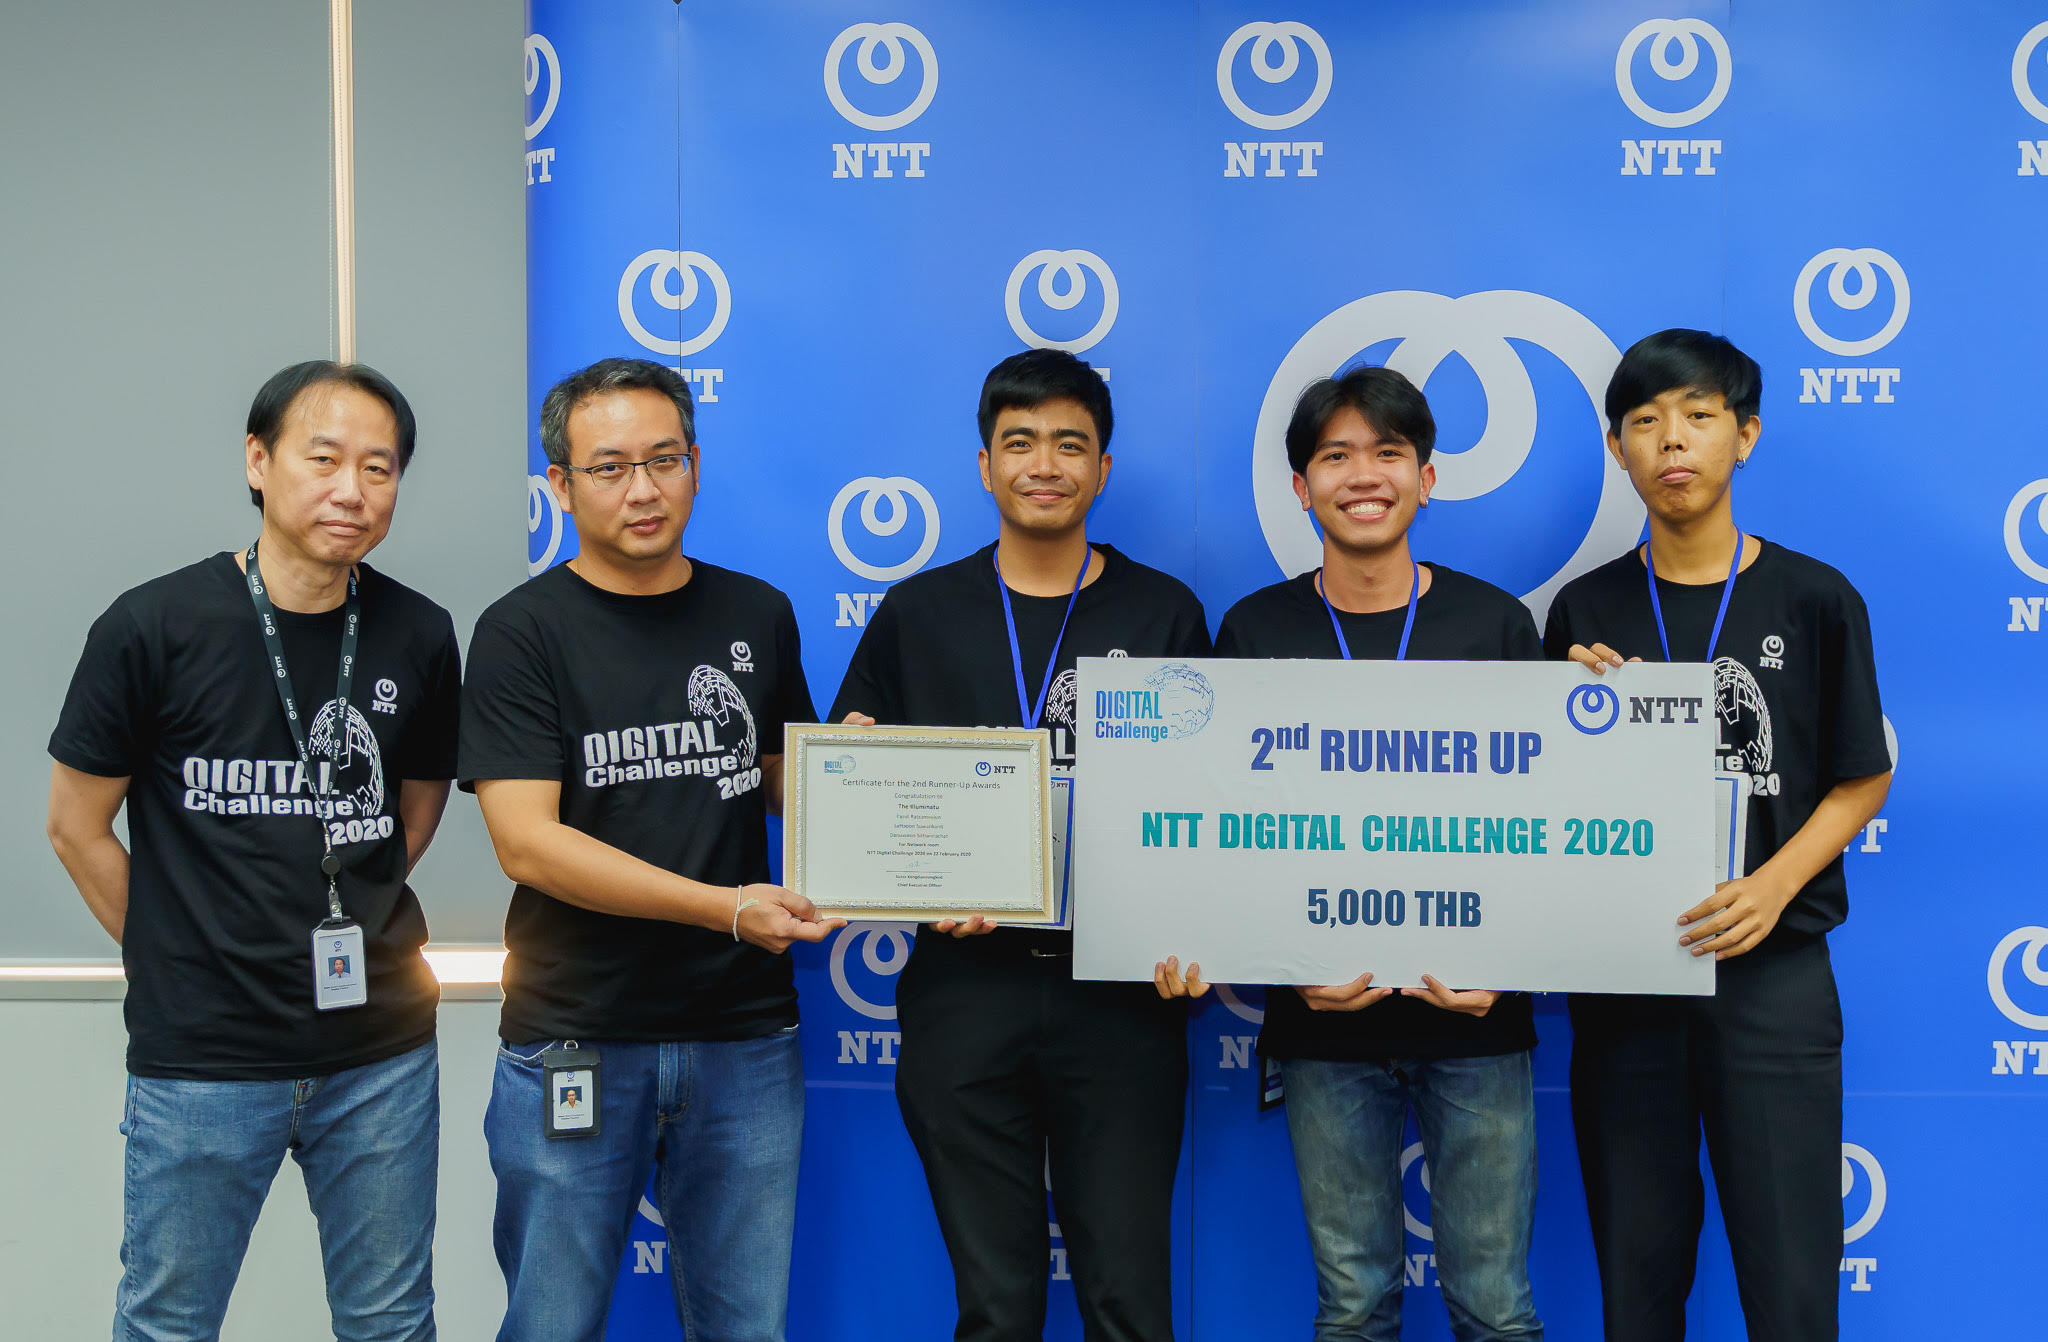 นักศึกษาสำนักวิชาเทคโนโลยีสารสนเทศ ได้รับรางวัลรองชนะเลิศอันดับที่ 2 ในงาน การแข่งขัน NTT Digital Challenge 2020